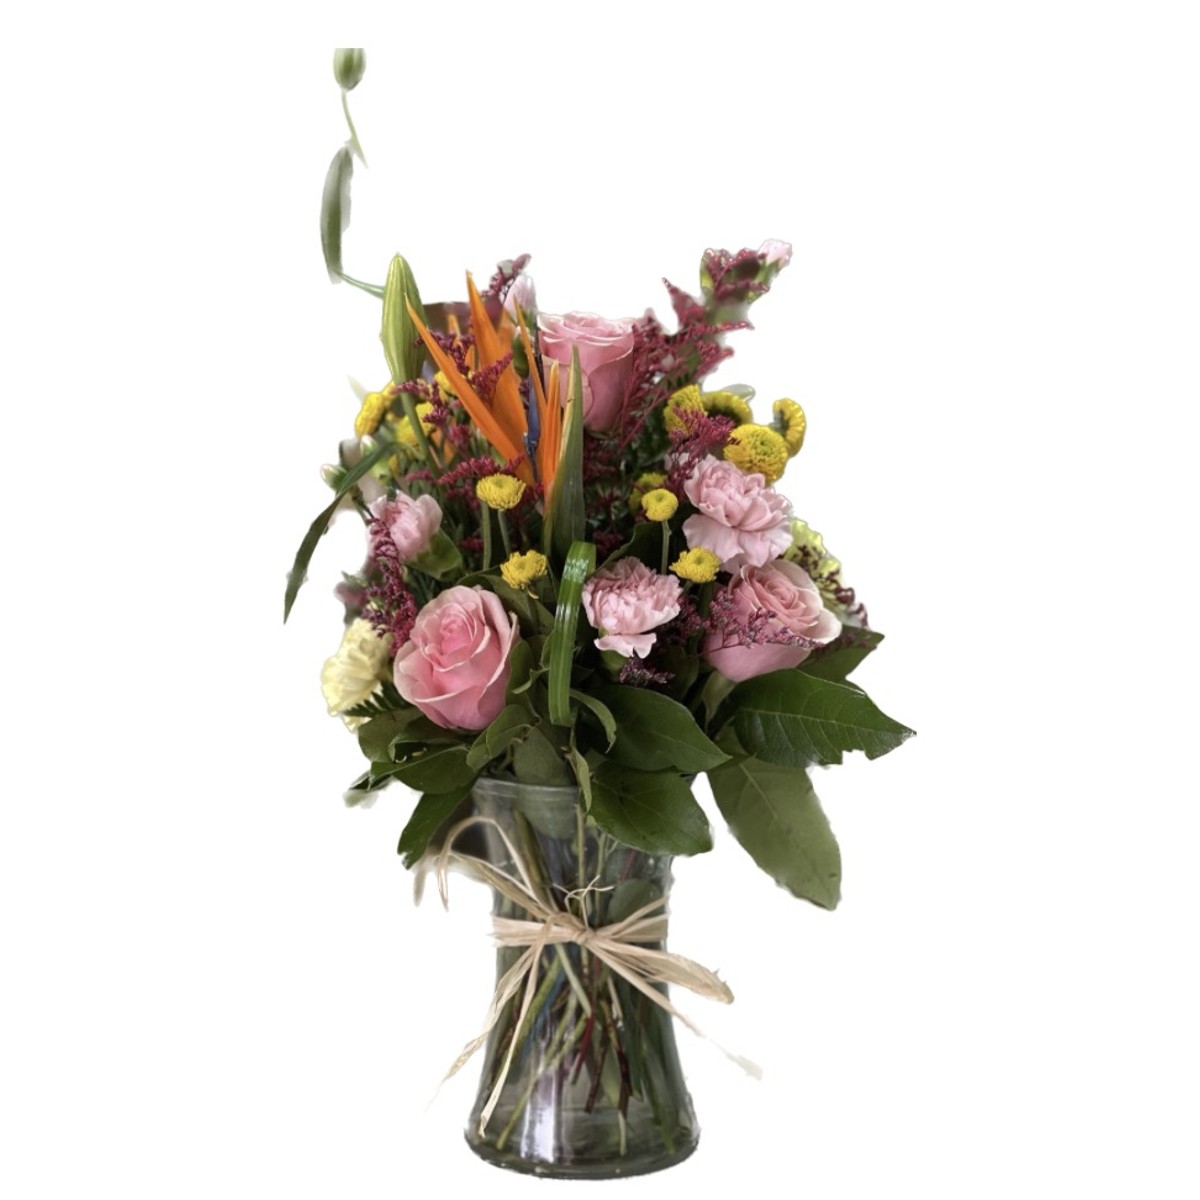 Acme Flower Shop (1511 New York 22) Floral Delivery - DoorDash